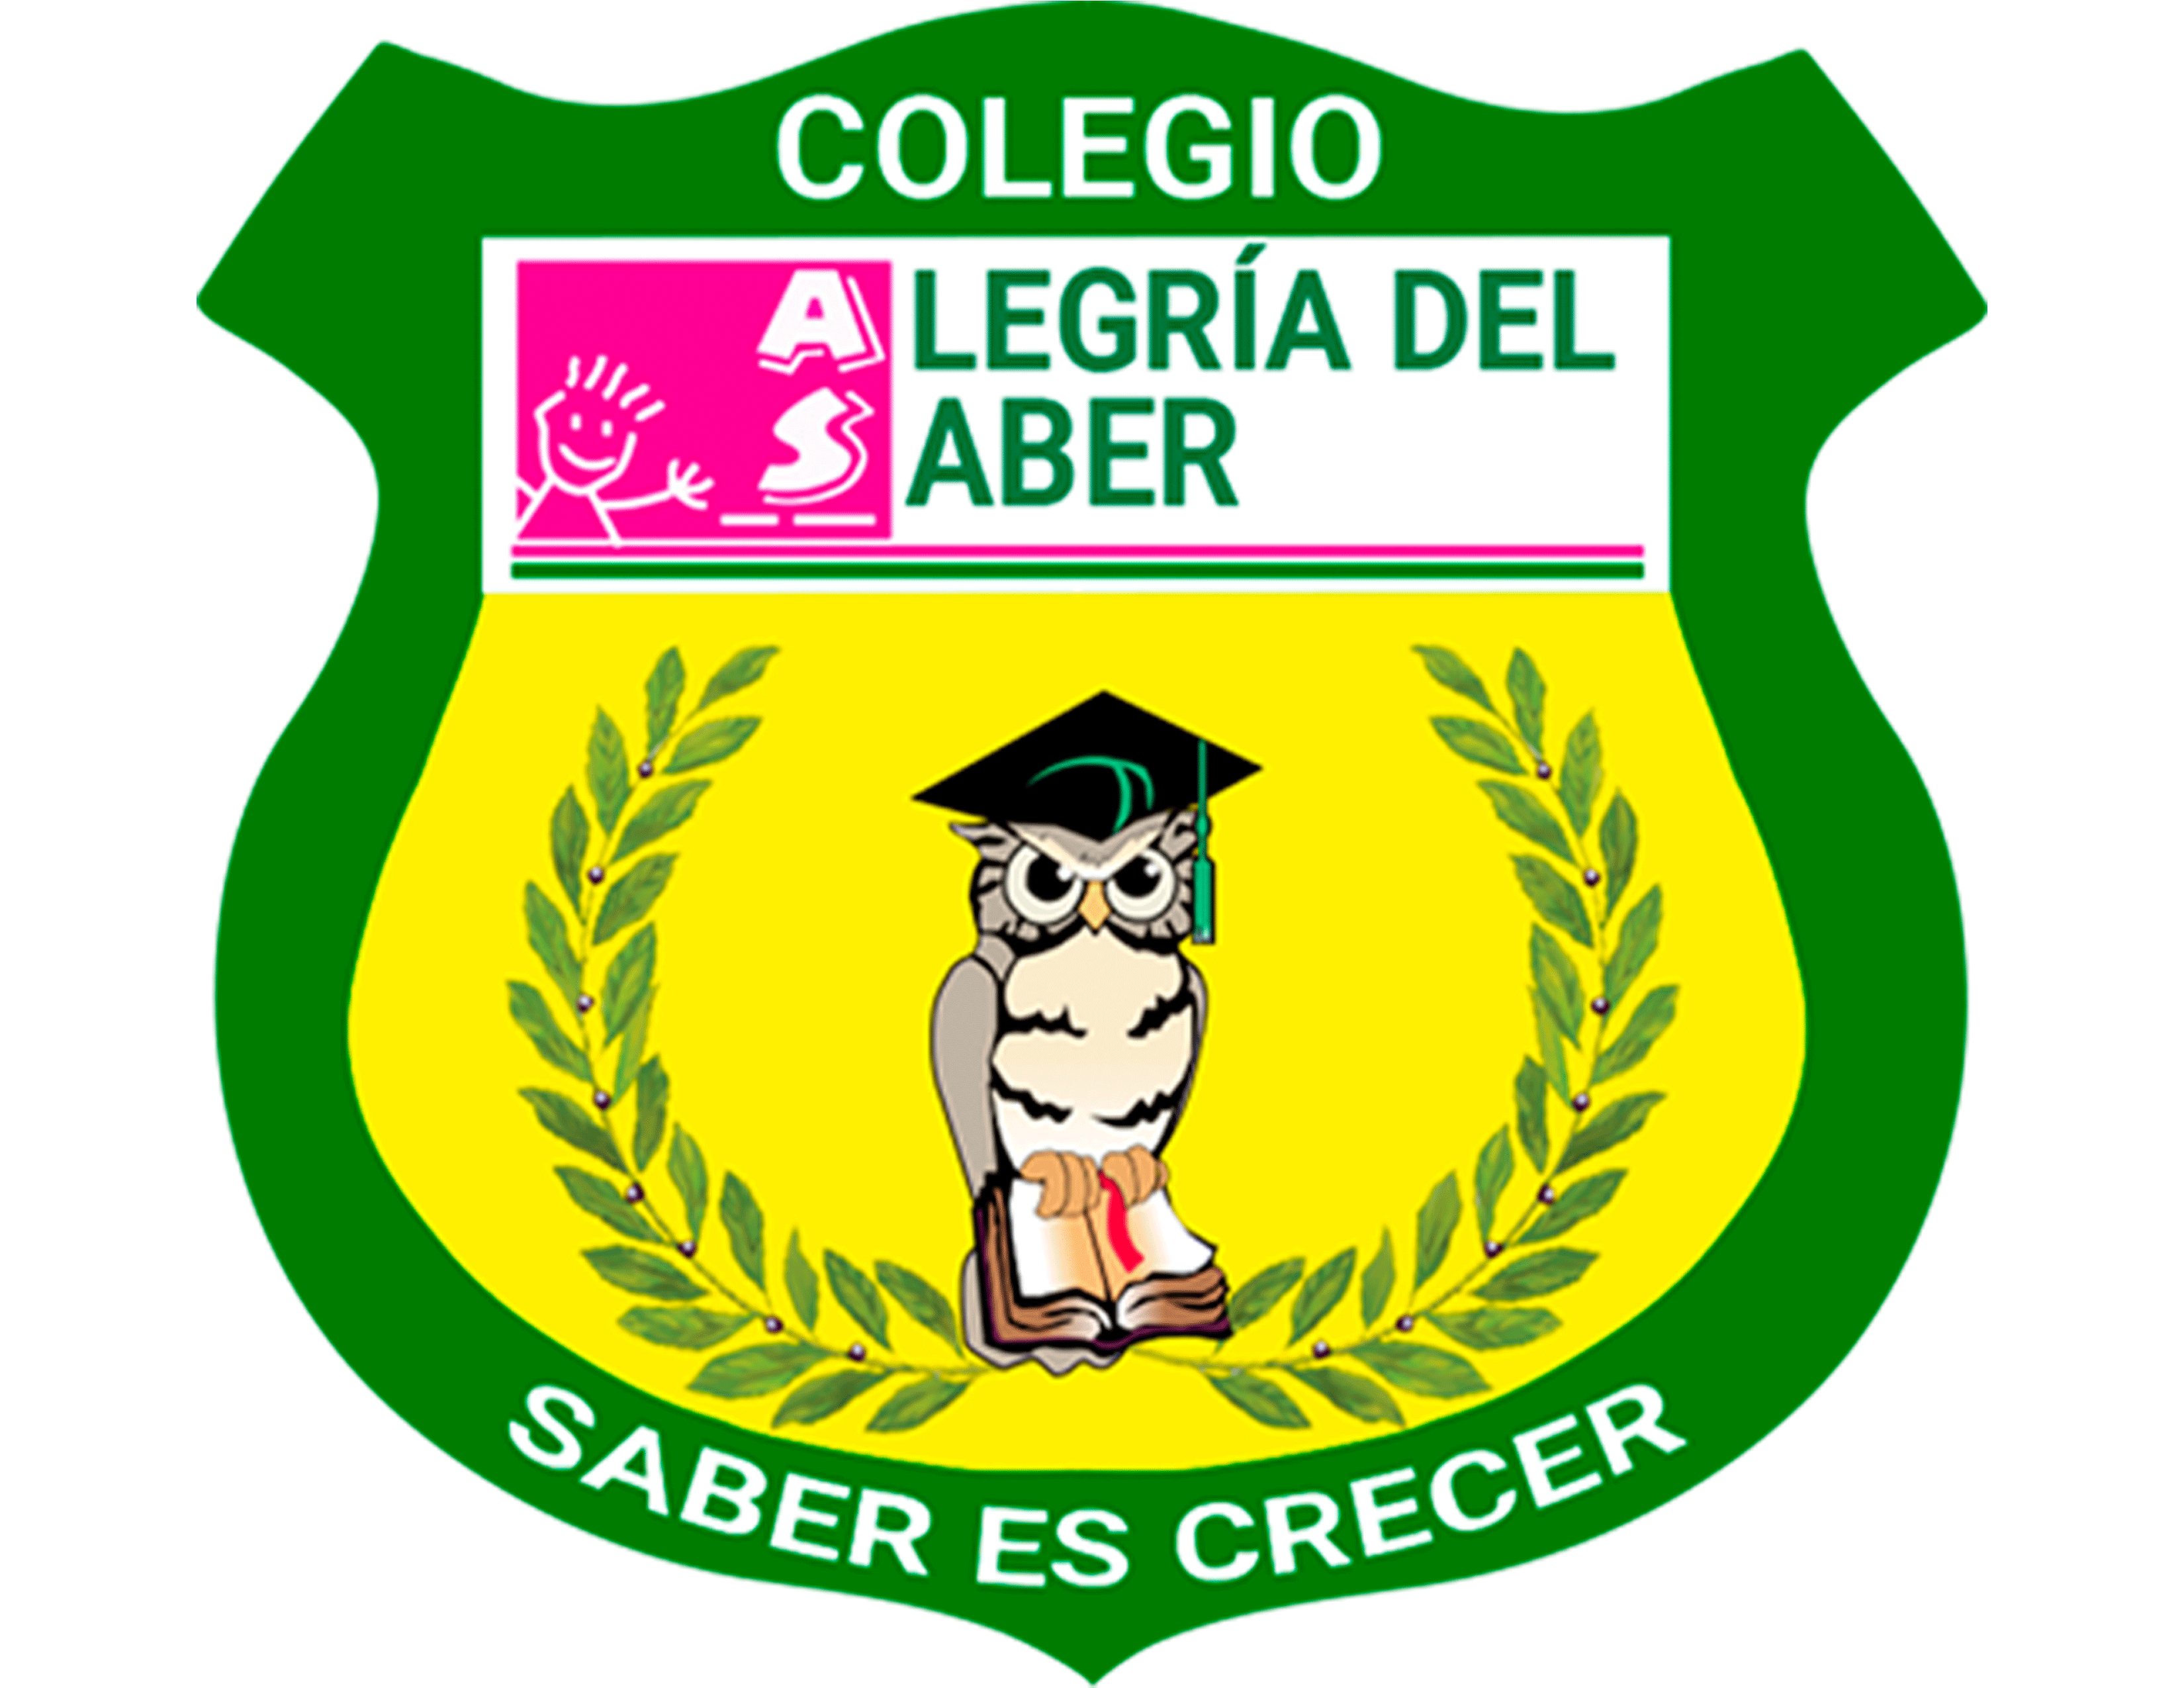 Colegio Alegría del Saber